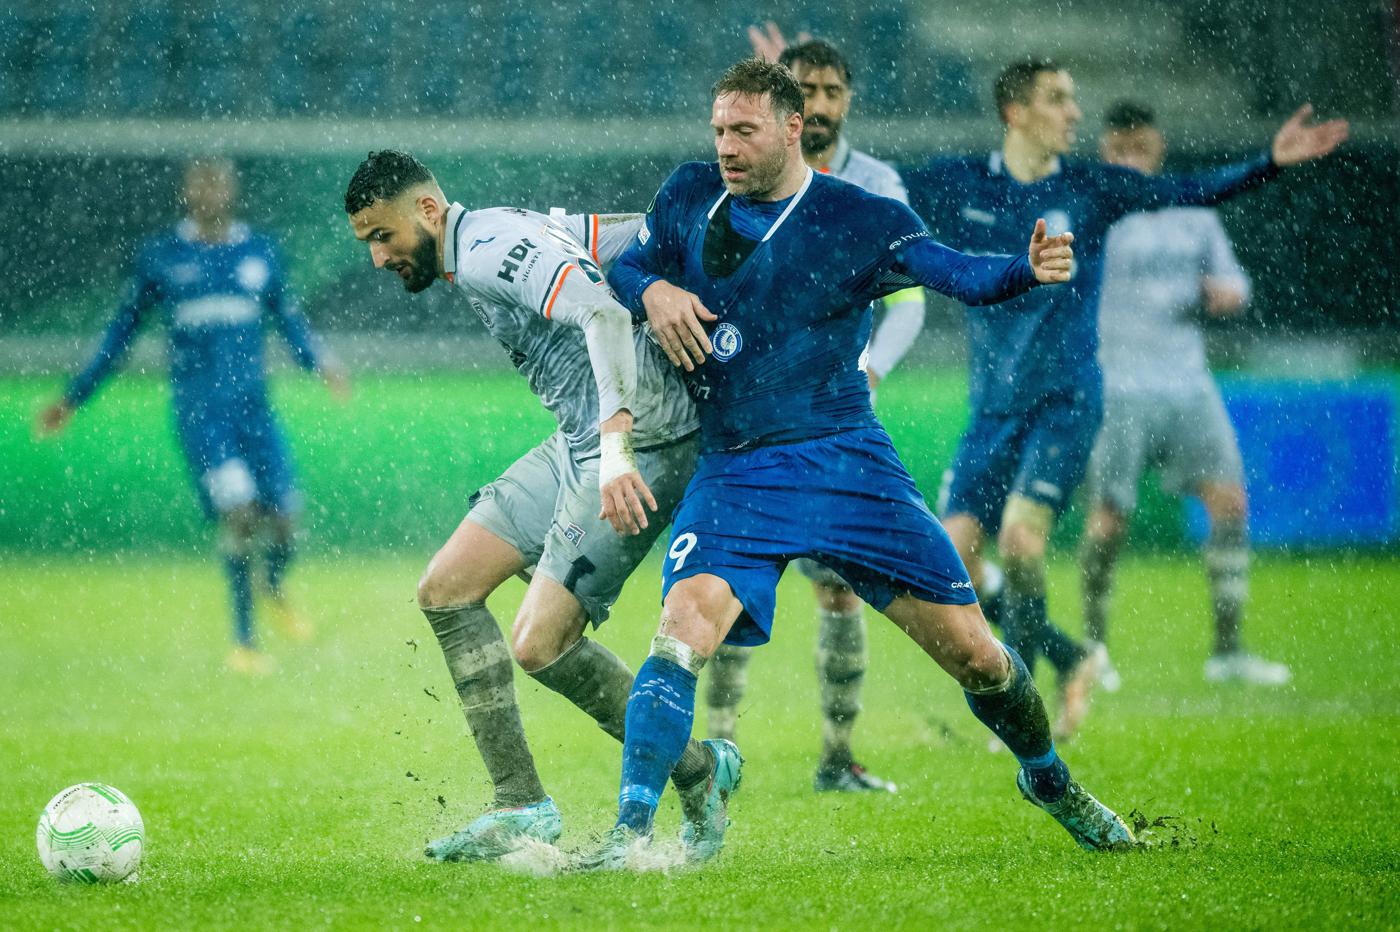 Gent - Basakşehir - 1:1. Konferenz-Liga. Rückblick auf das Spiel, Statistik.